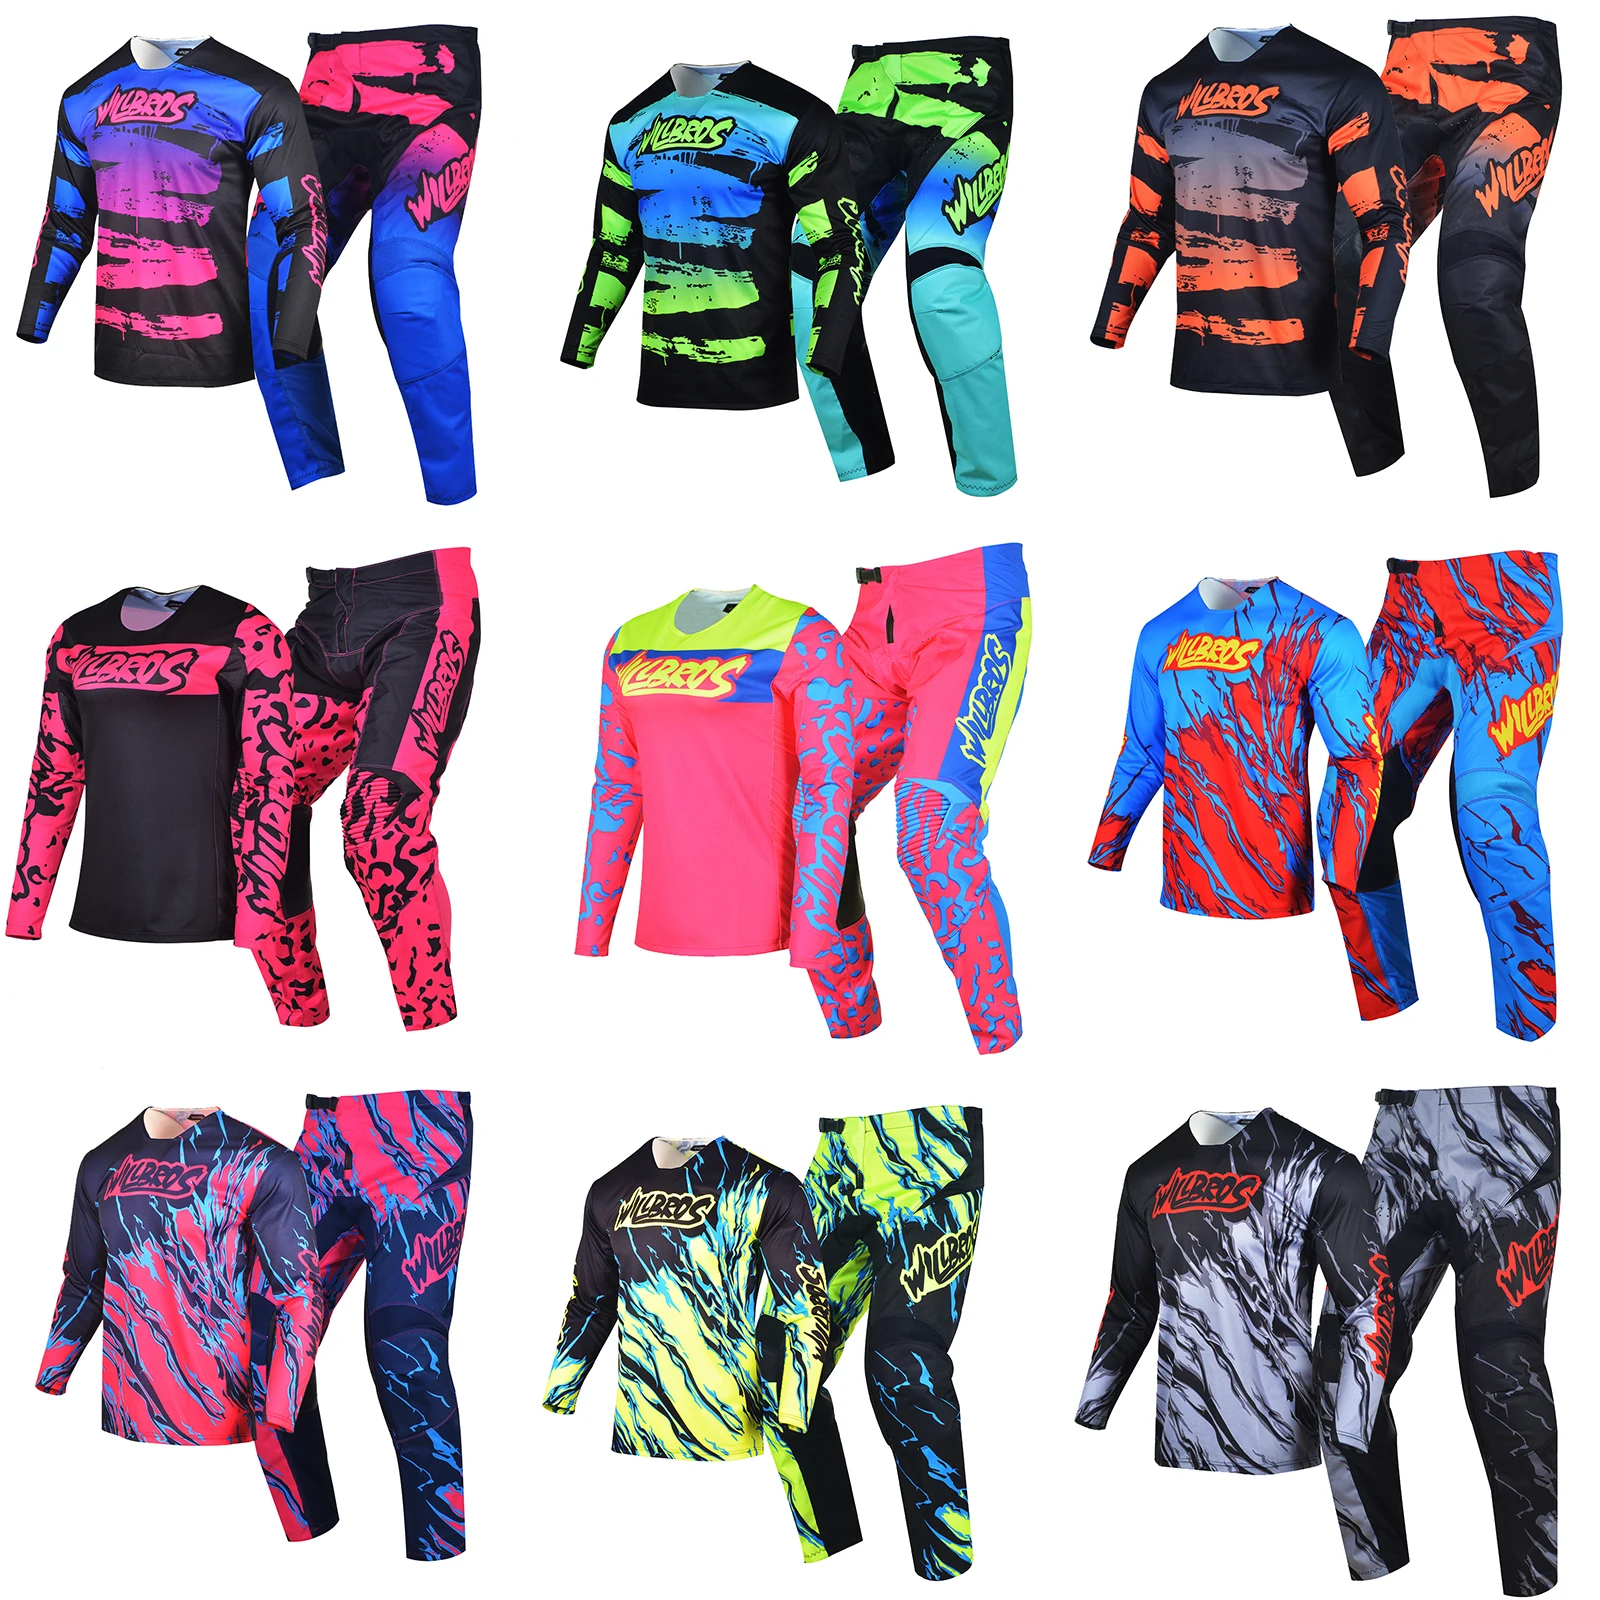 

Комплект одежды для мотокросса MX BMX DH, трикотажные штаны, комплект одежды для внедорожника Willbros, мужские комплекты для горного велосипеда, квадроцикла